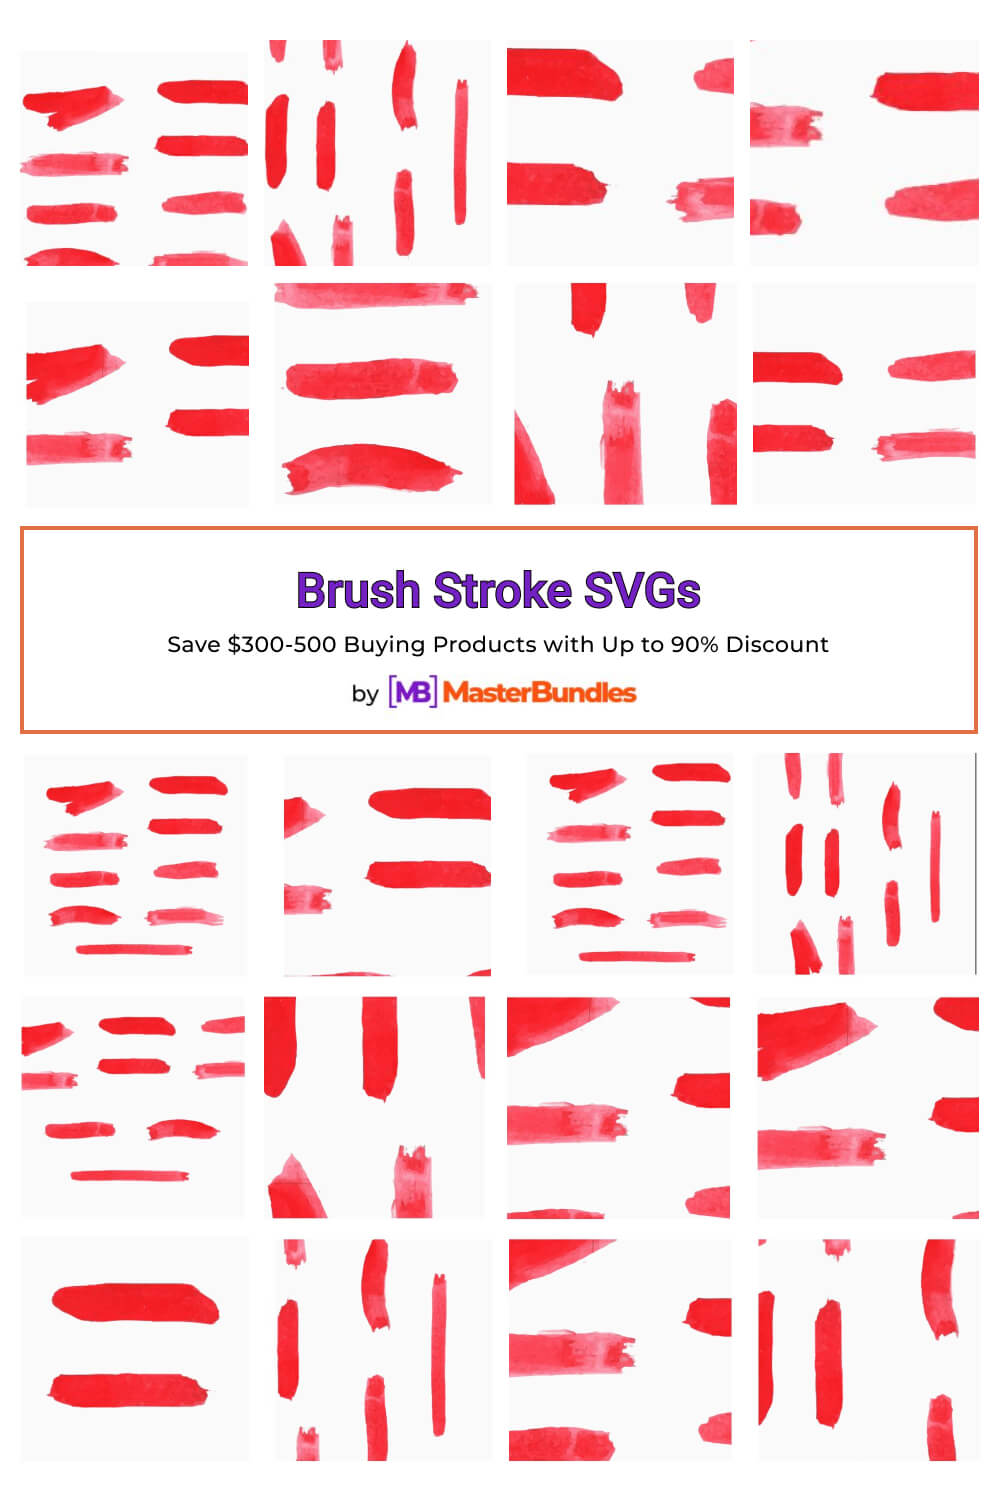 brush stroke svgs pinterest image.